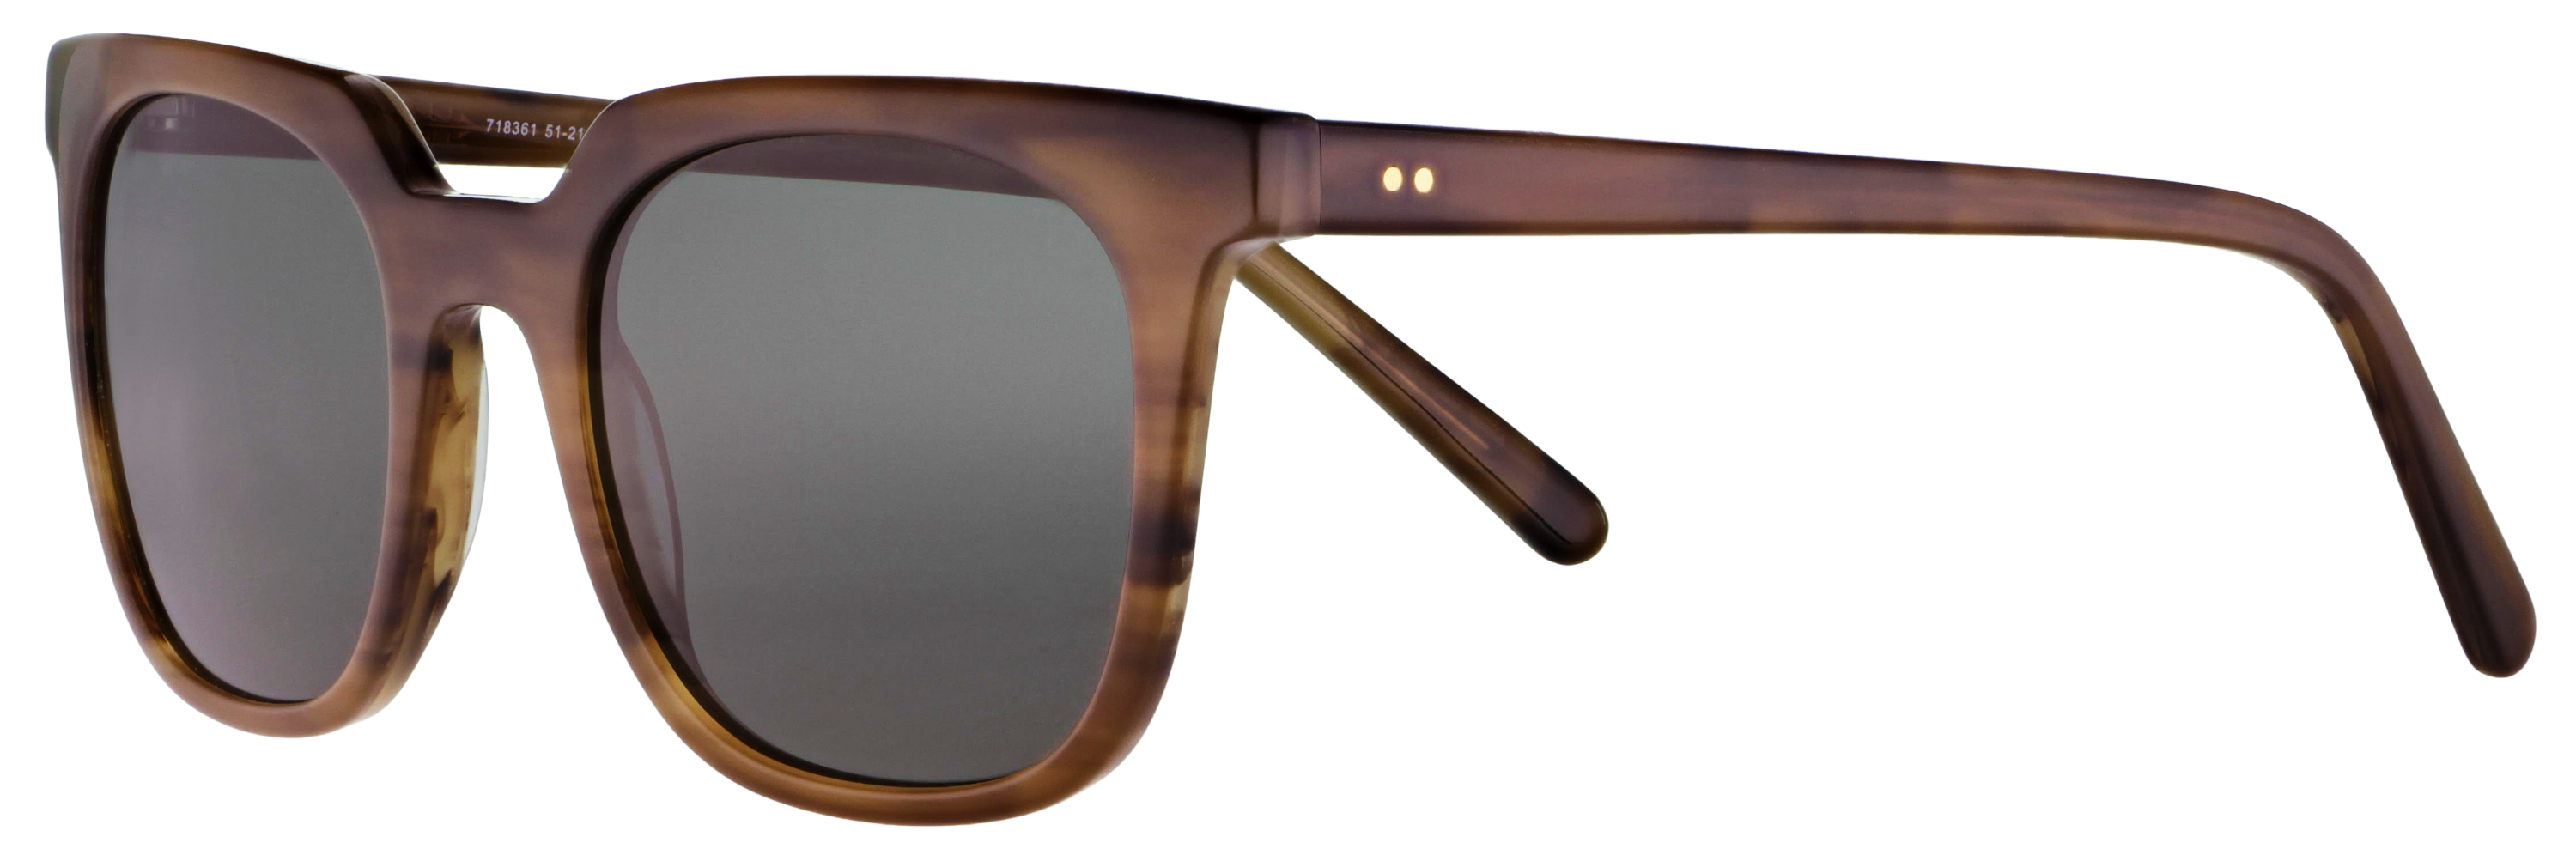 Das Bild zeigt die Sonnenbrille 718361 von der Marke Abele Optik in braun.